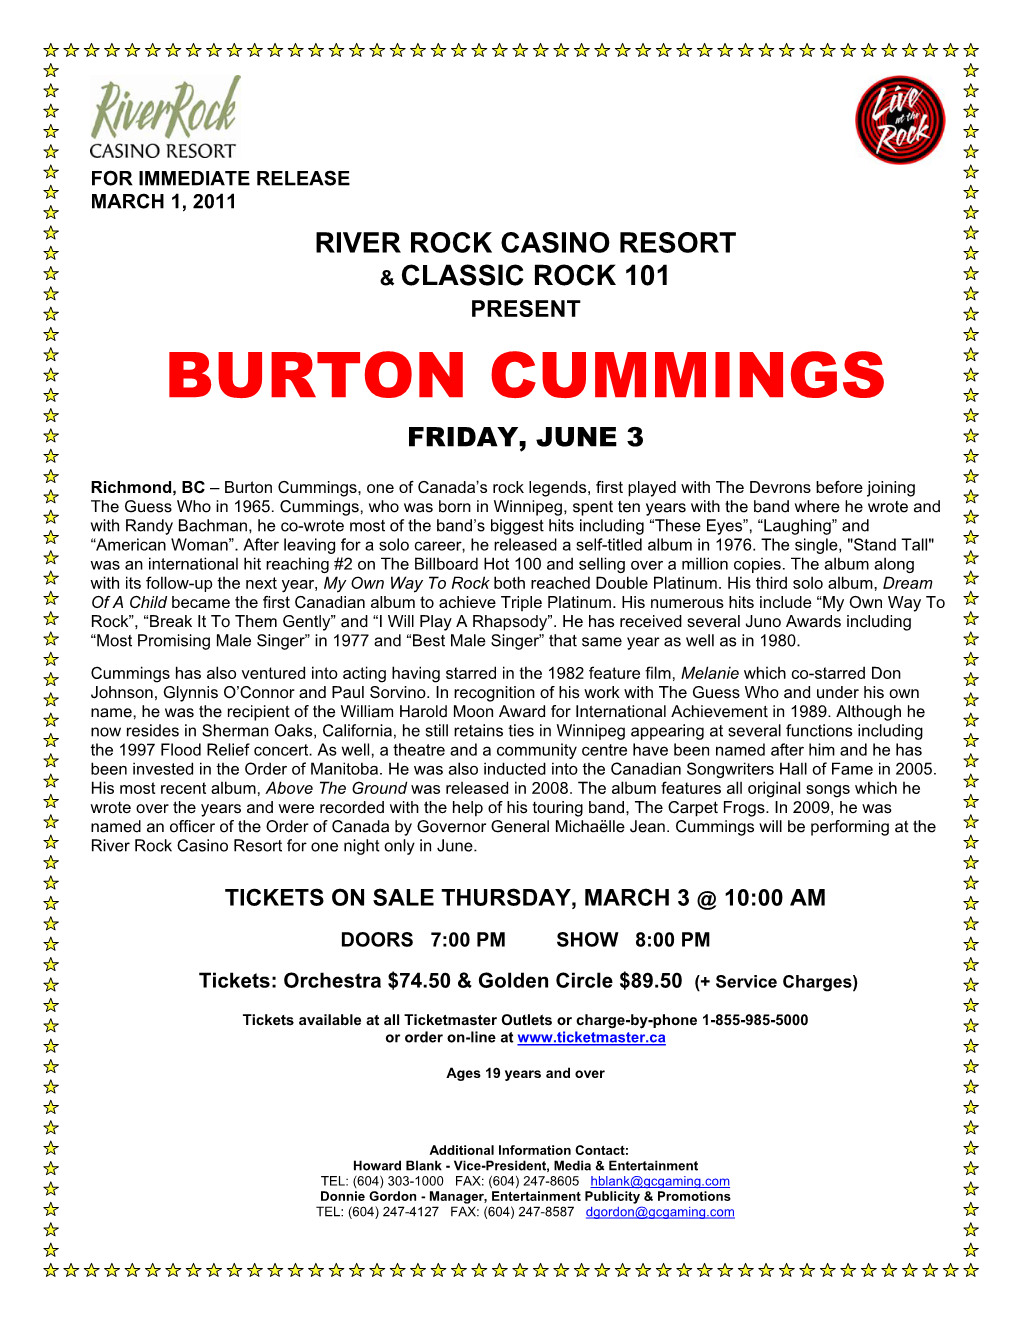 Burton Cummings Friday, June 3